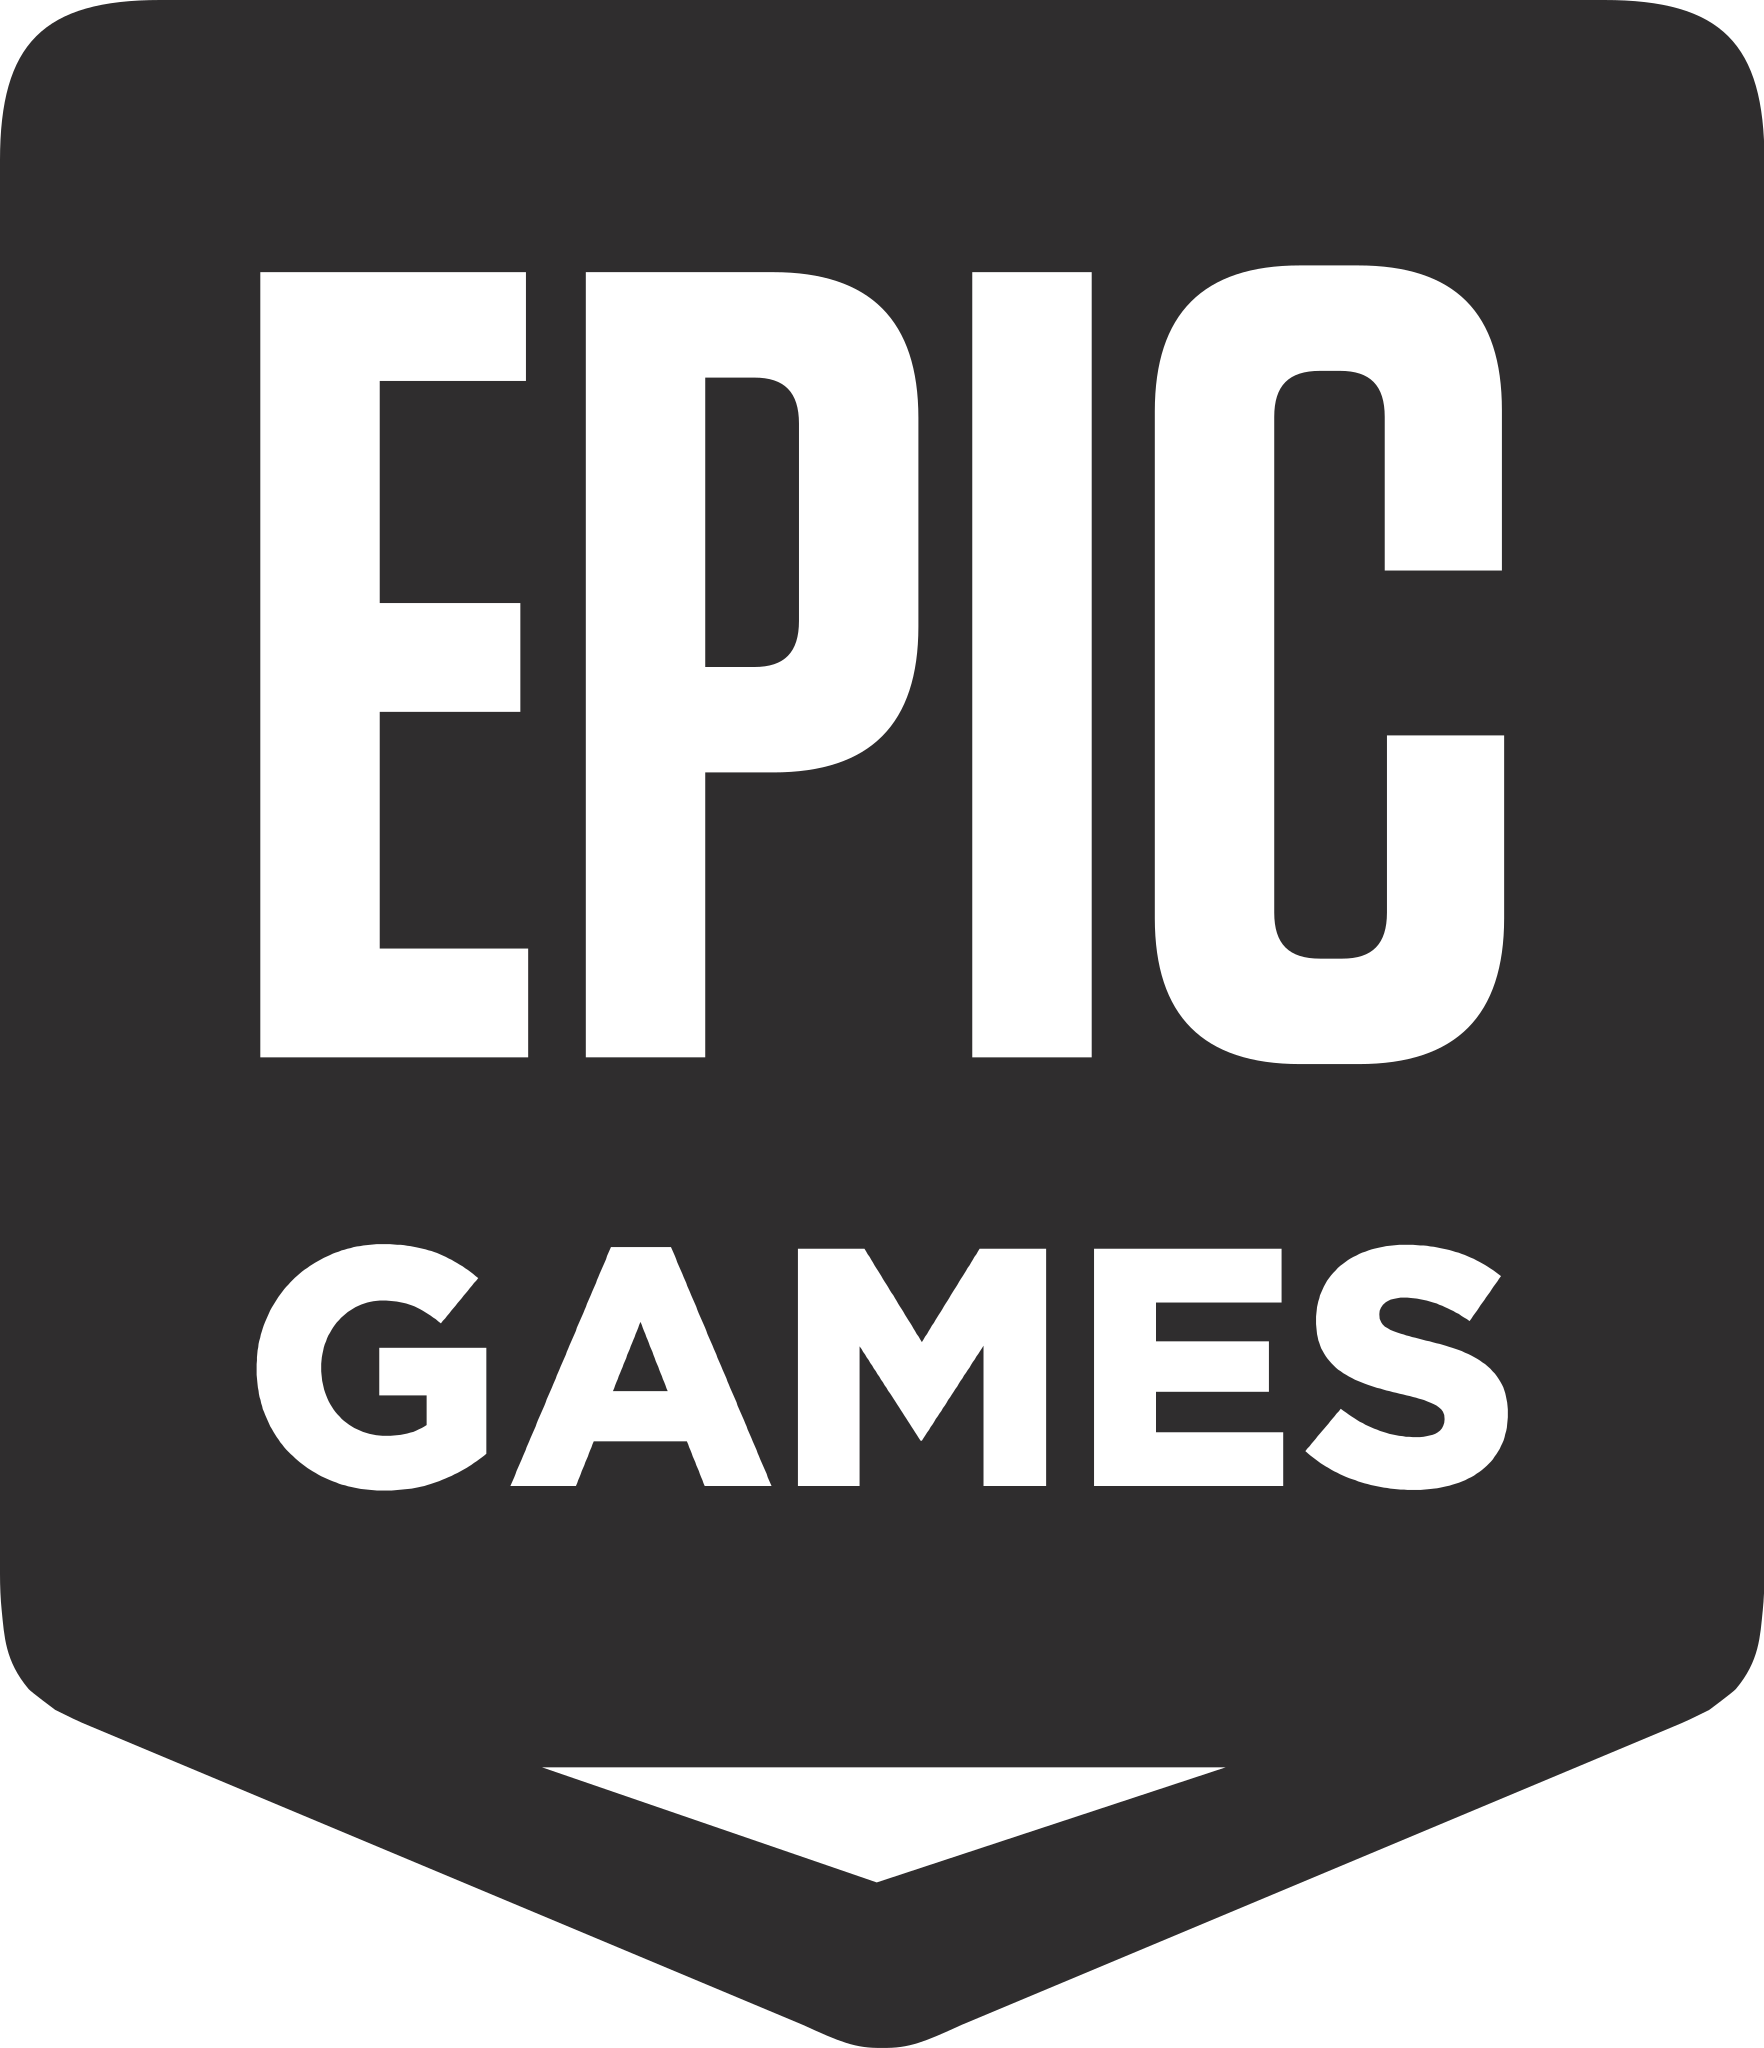 Epic_Games_logo.svg